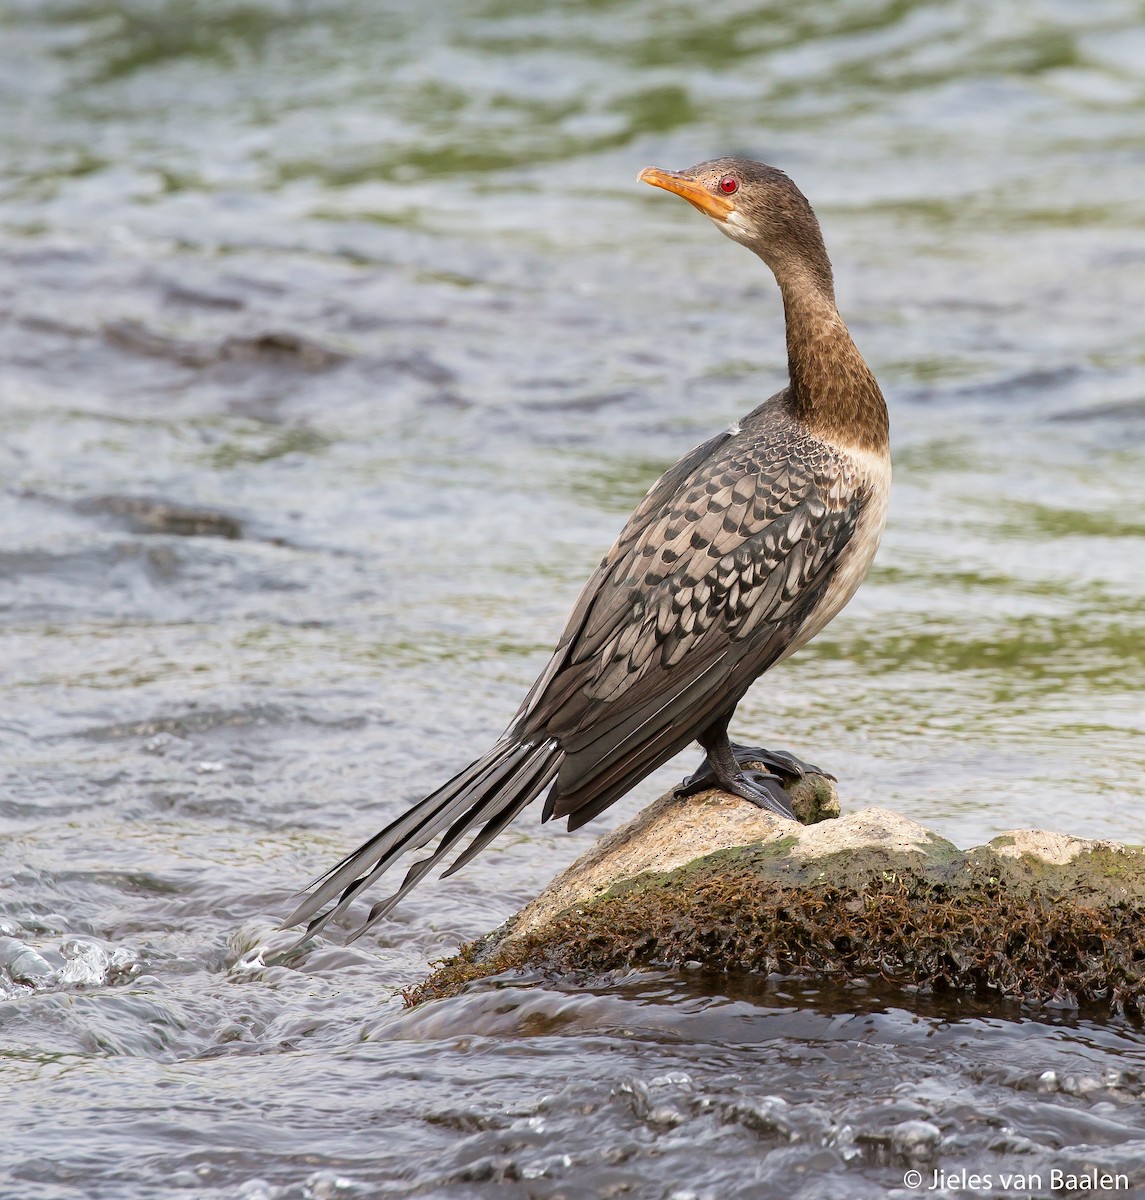 Long-tailed Cormorant - Jieles van Baalen